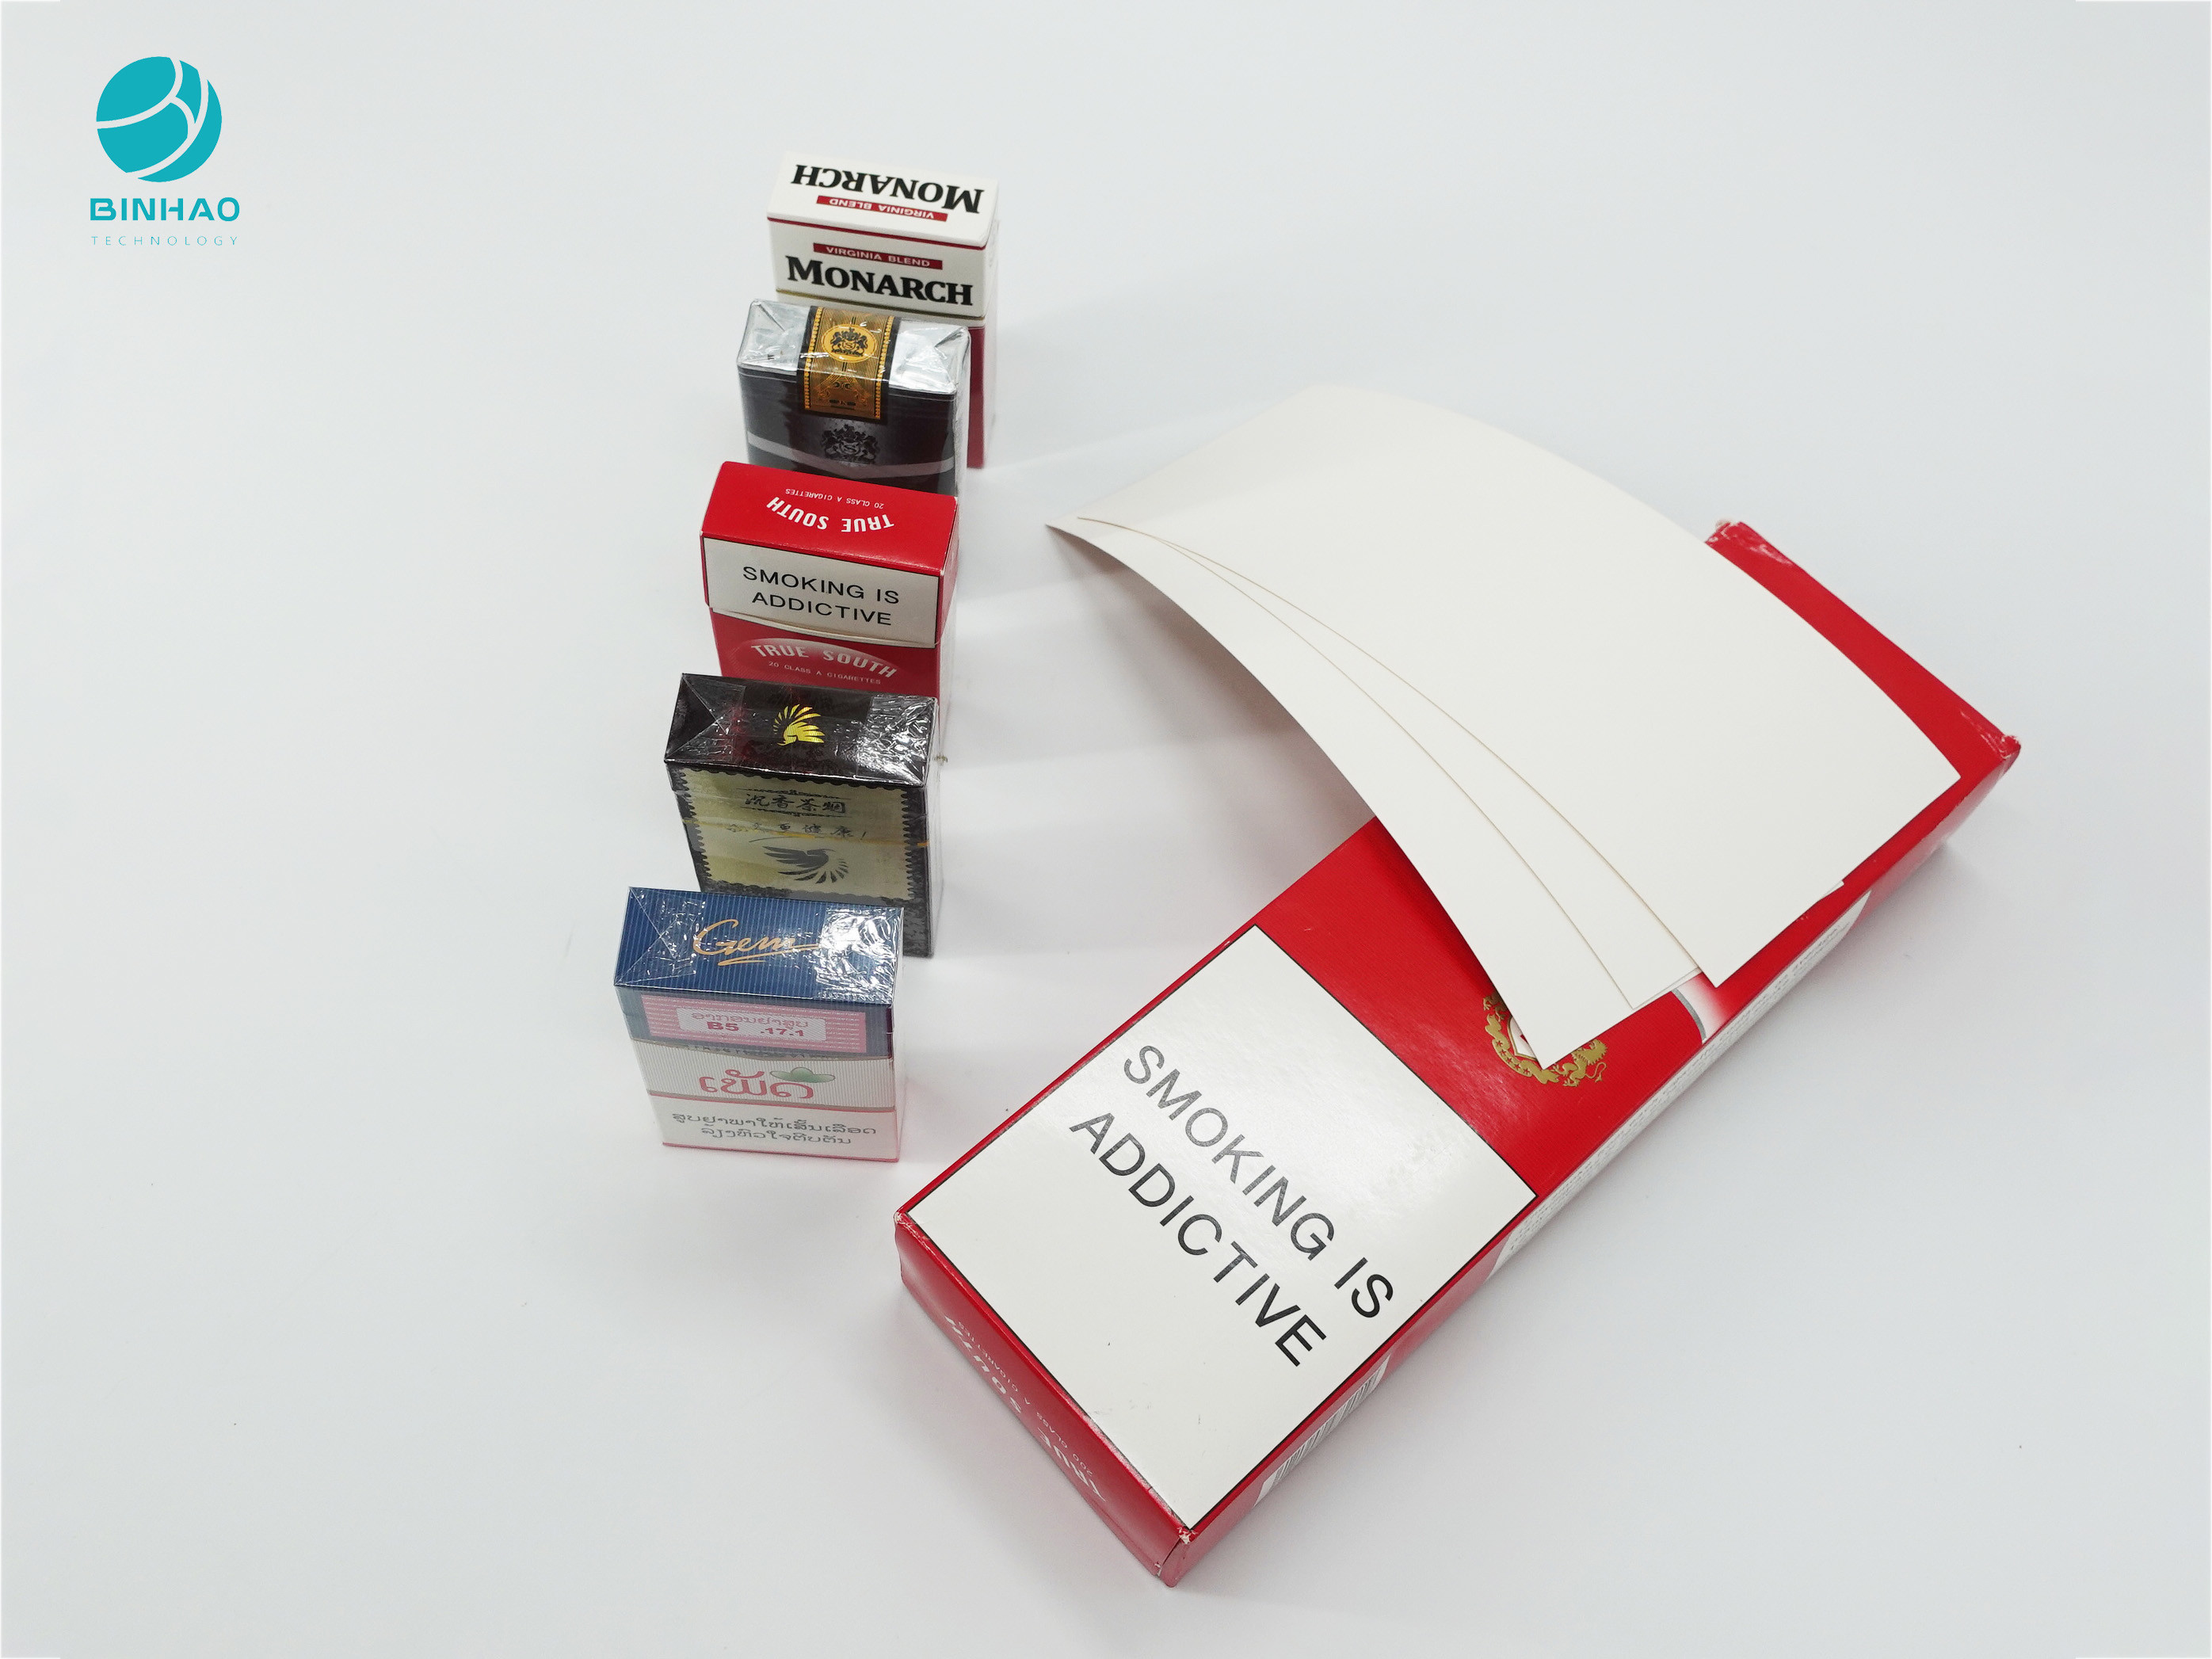 Kundenspezifisches Muster-rauchende Packpapier-Pappe für Zigarettenetui-Verpackungs-Kasten